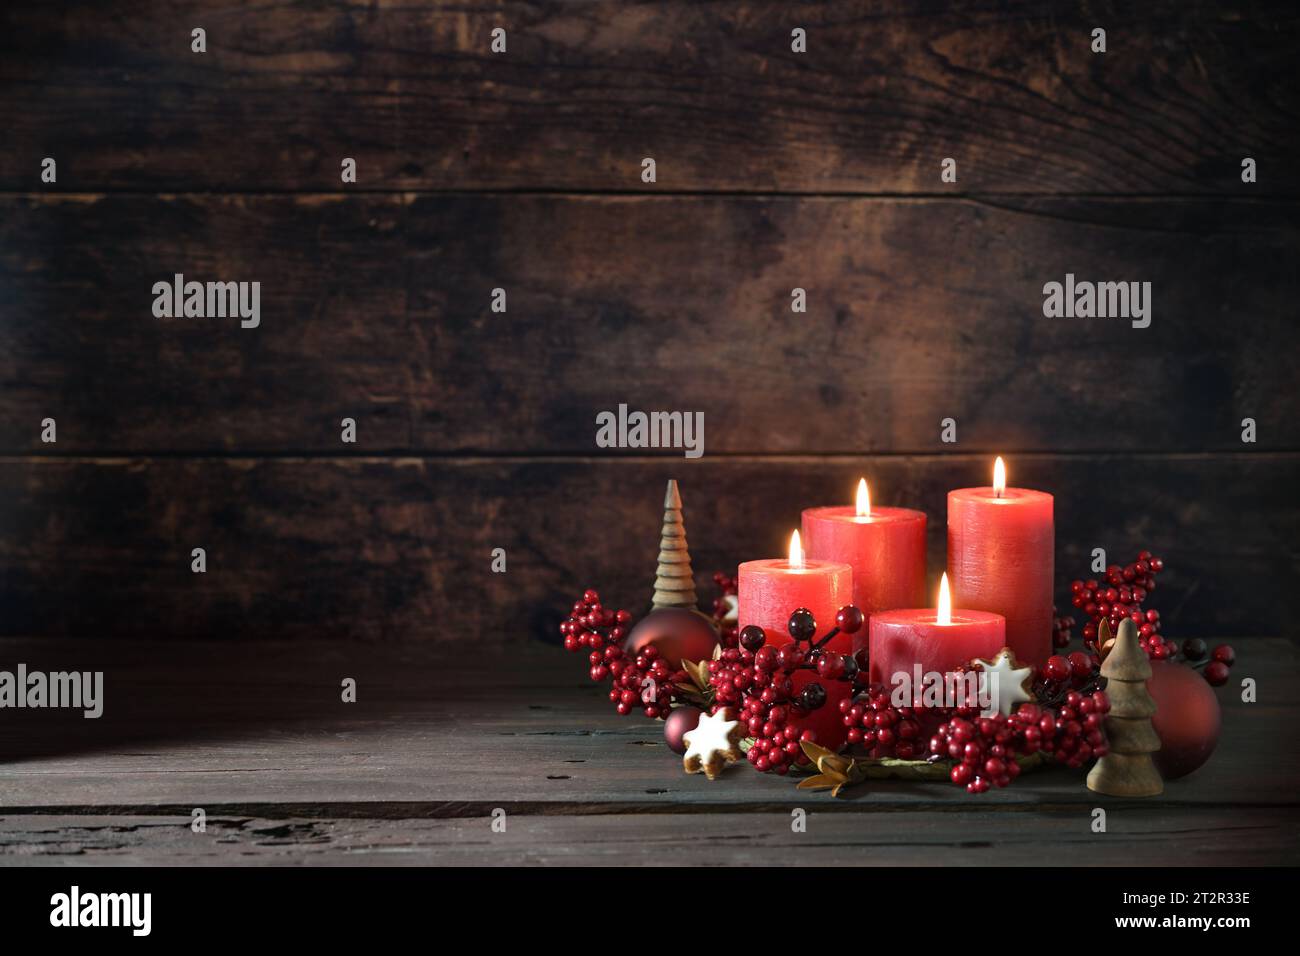 Quarto avvento con candele rosse accese in una corona di frutti di bosco decorativi, palle di Natale e biscotti con stelle di cannella su uno sfondo rustico scuro, Foto Stock